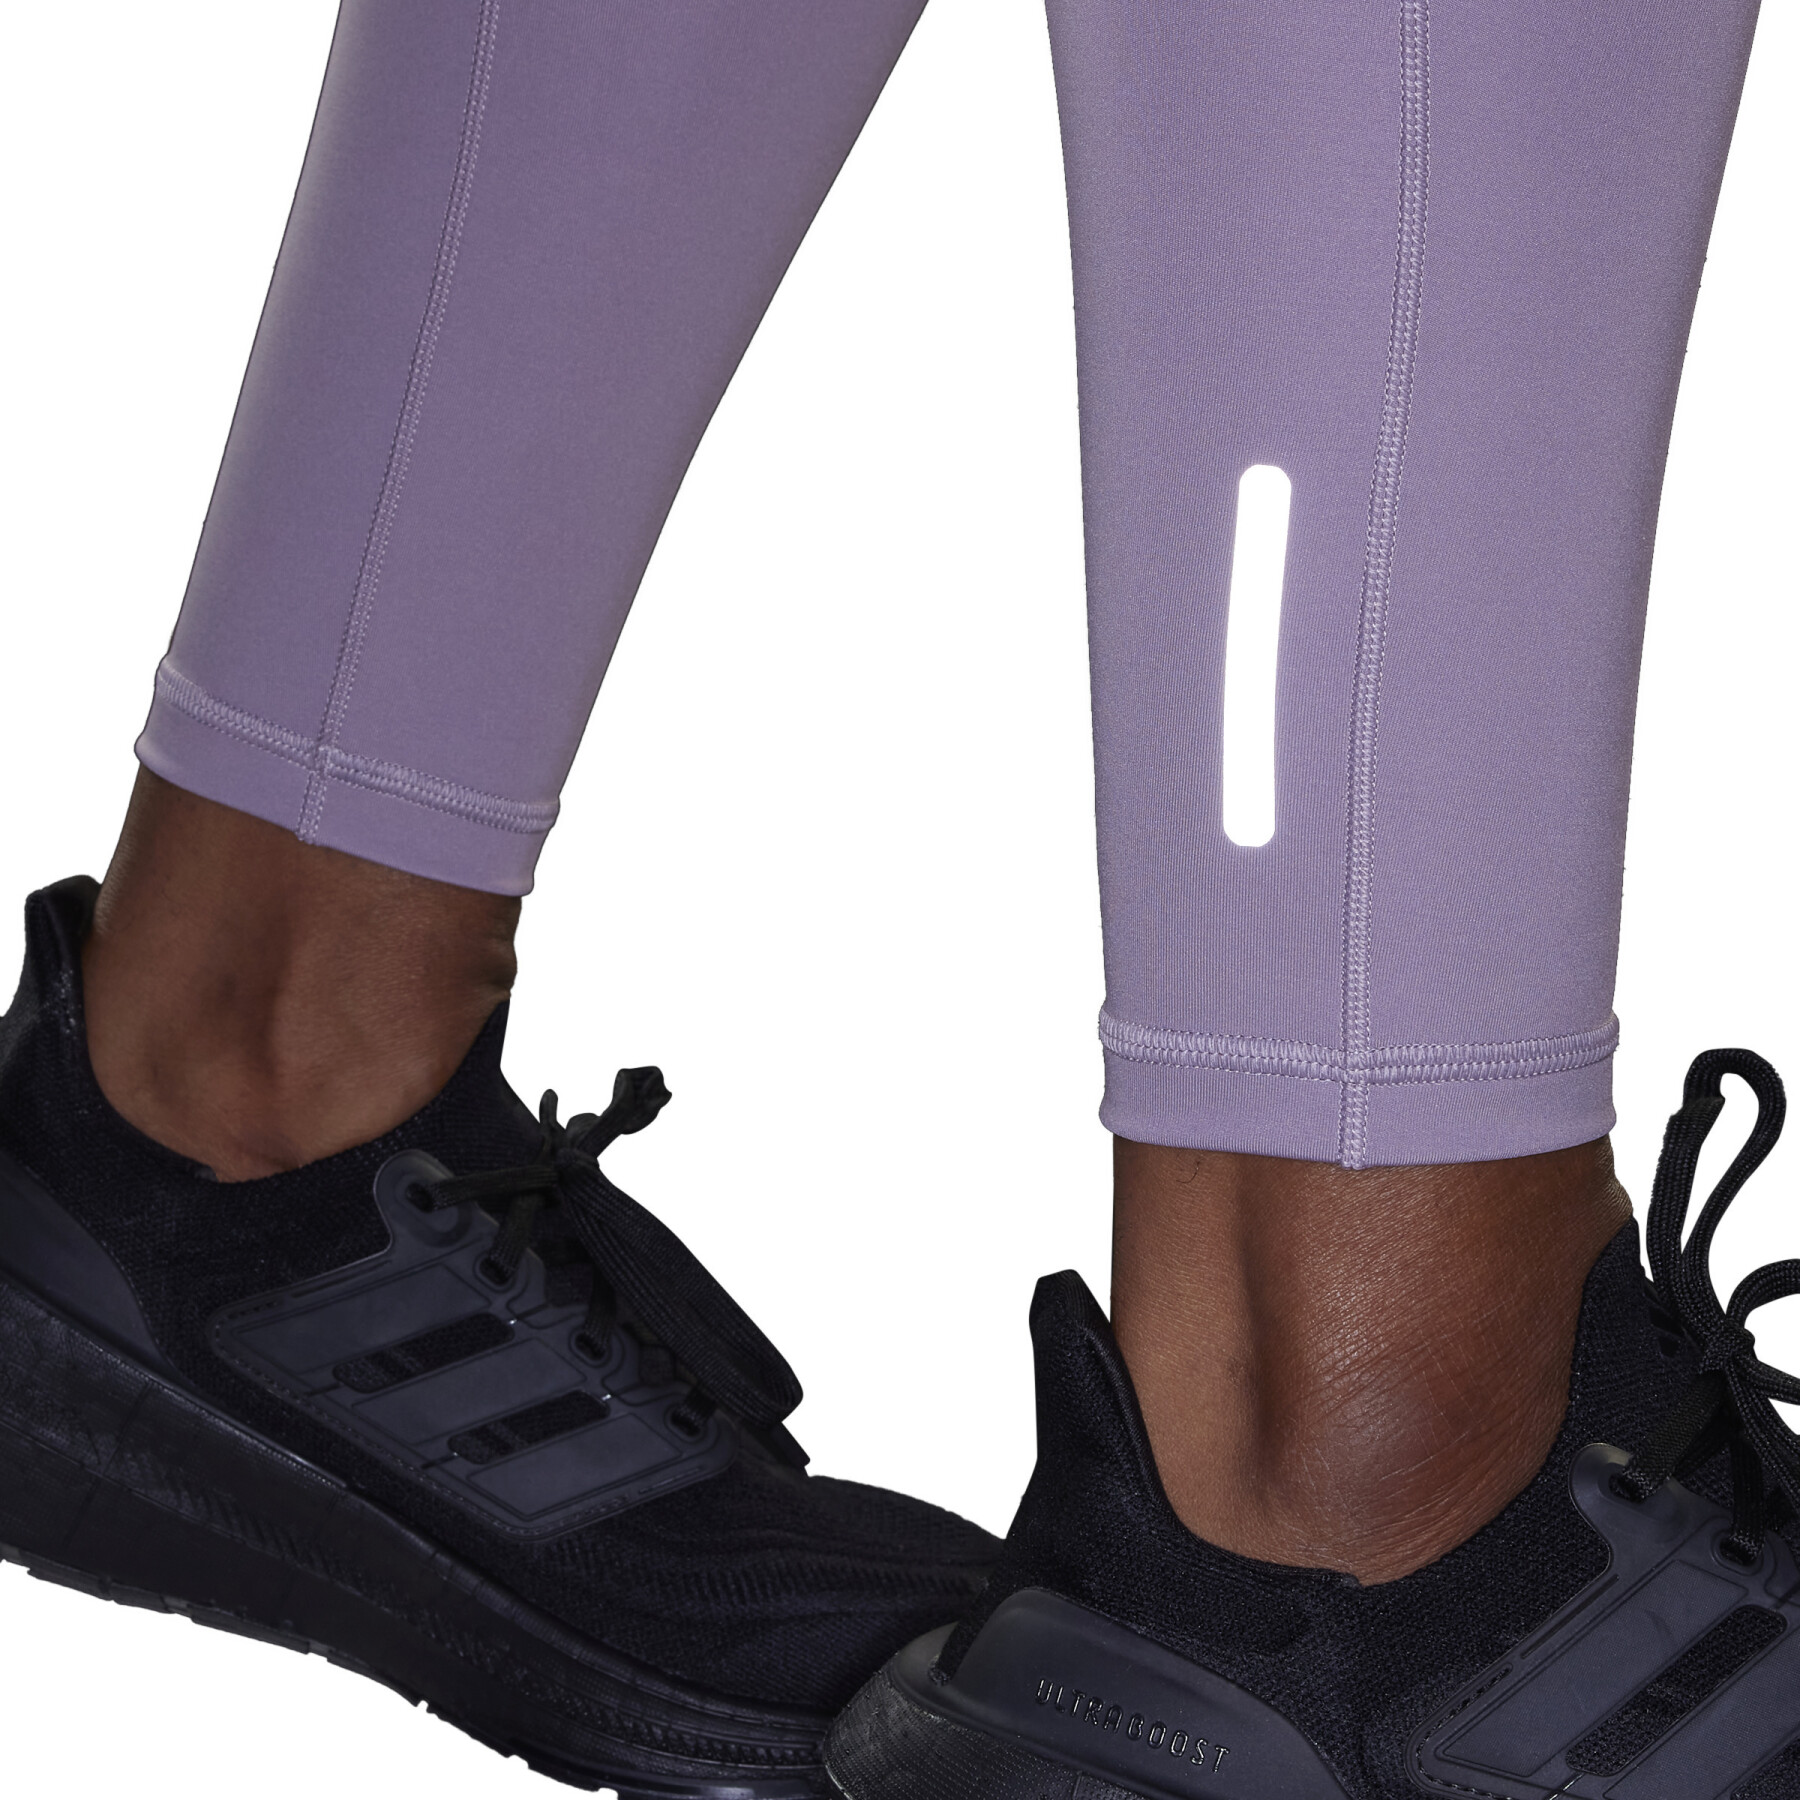 Women's 7/8 leggings adidas Ultimate